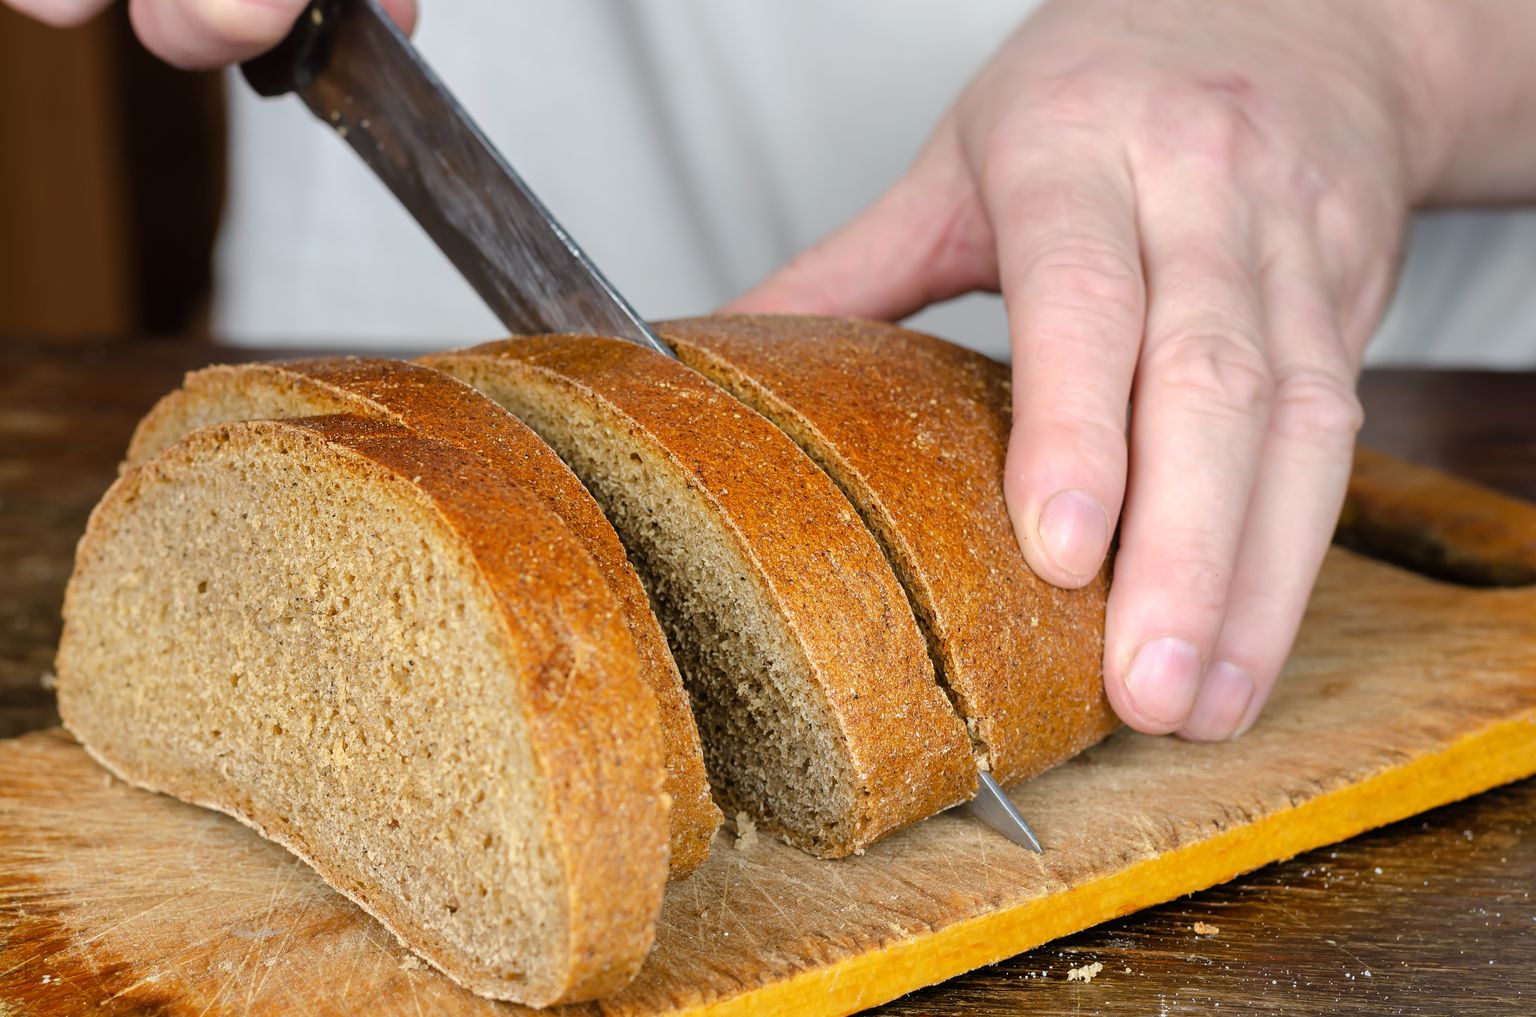 Хлеб нельзя передавать из рук в руки. Иллюстративное фото